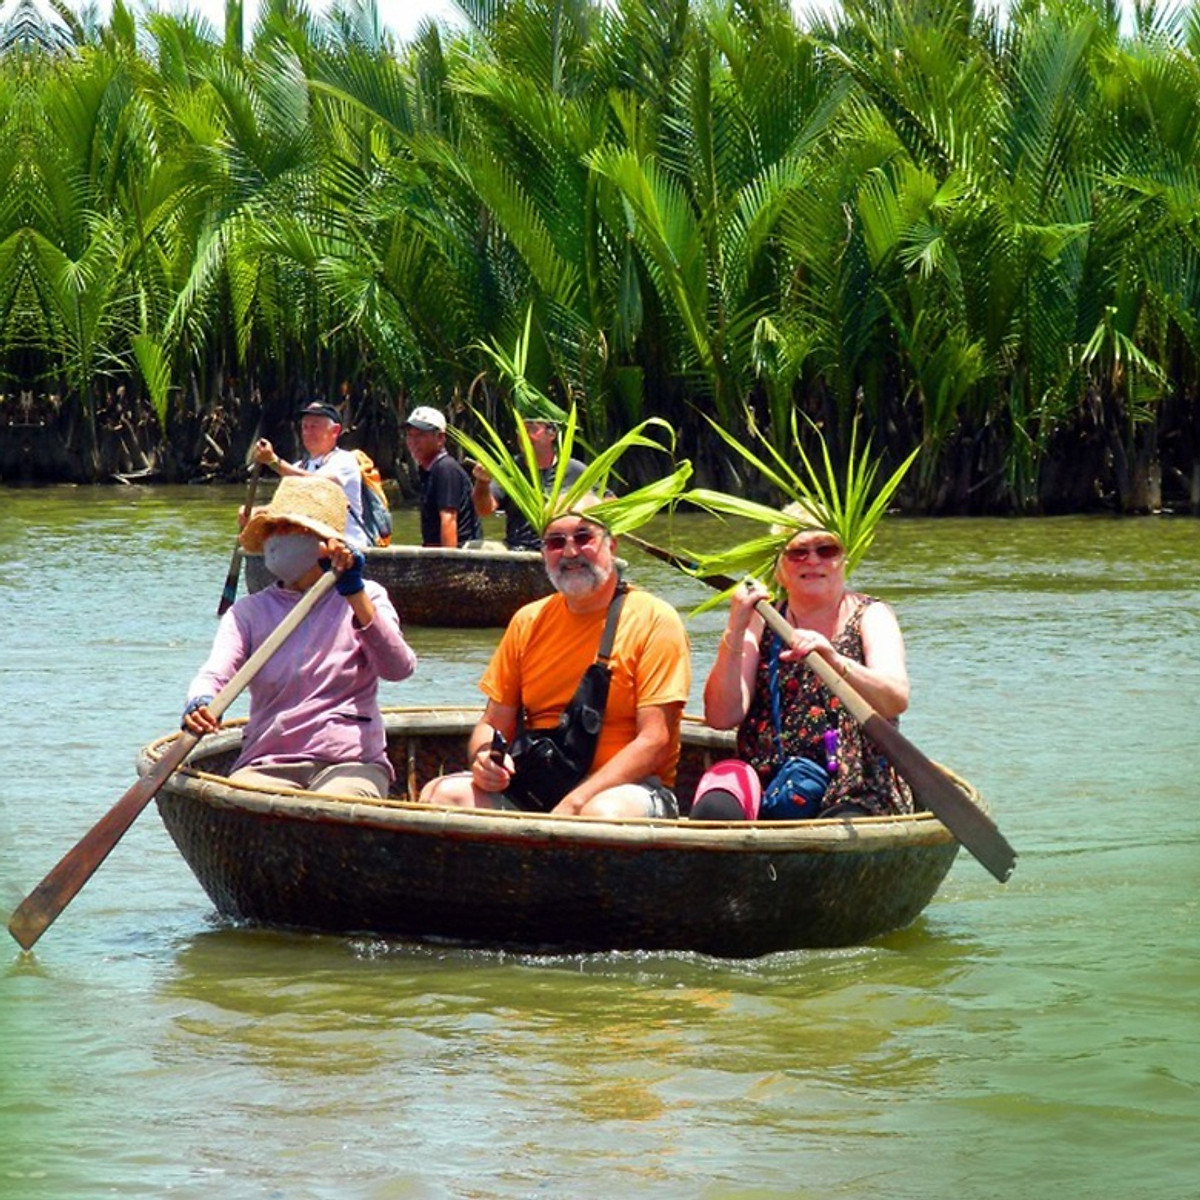 Gợi ý lịch trình tham quan rừng dừa Bảy Mẫu Hội An 1 ngày - Miền Tây sông nước phiên bản phố cổ 7